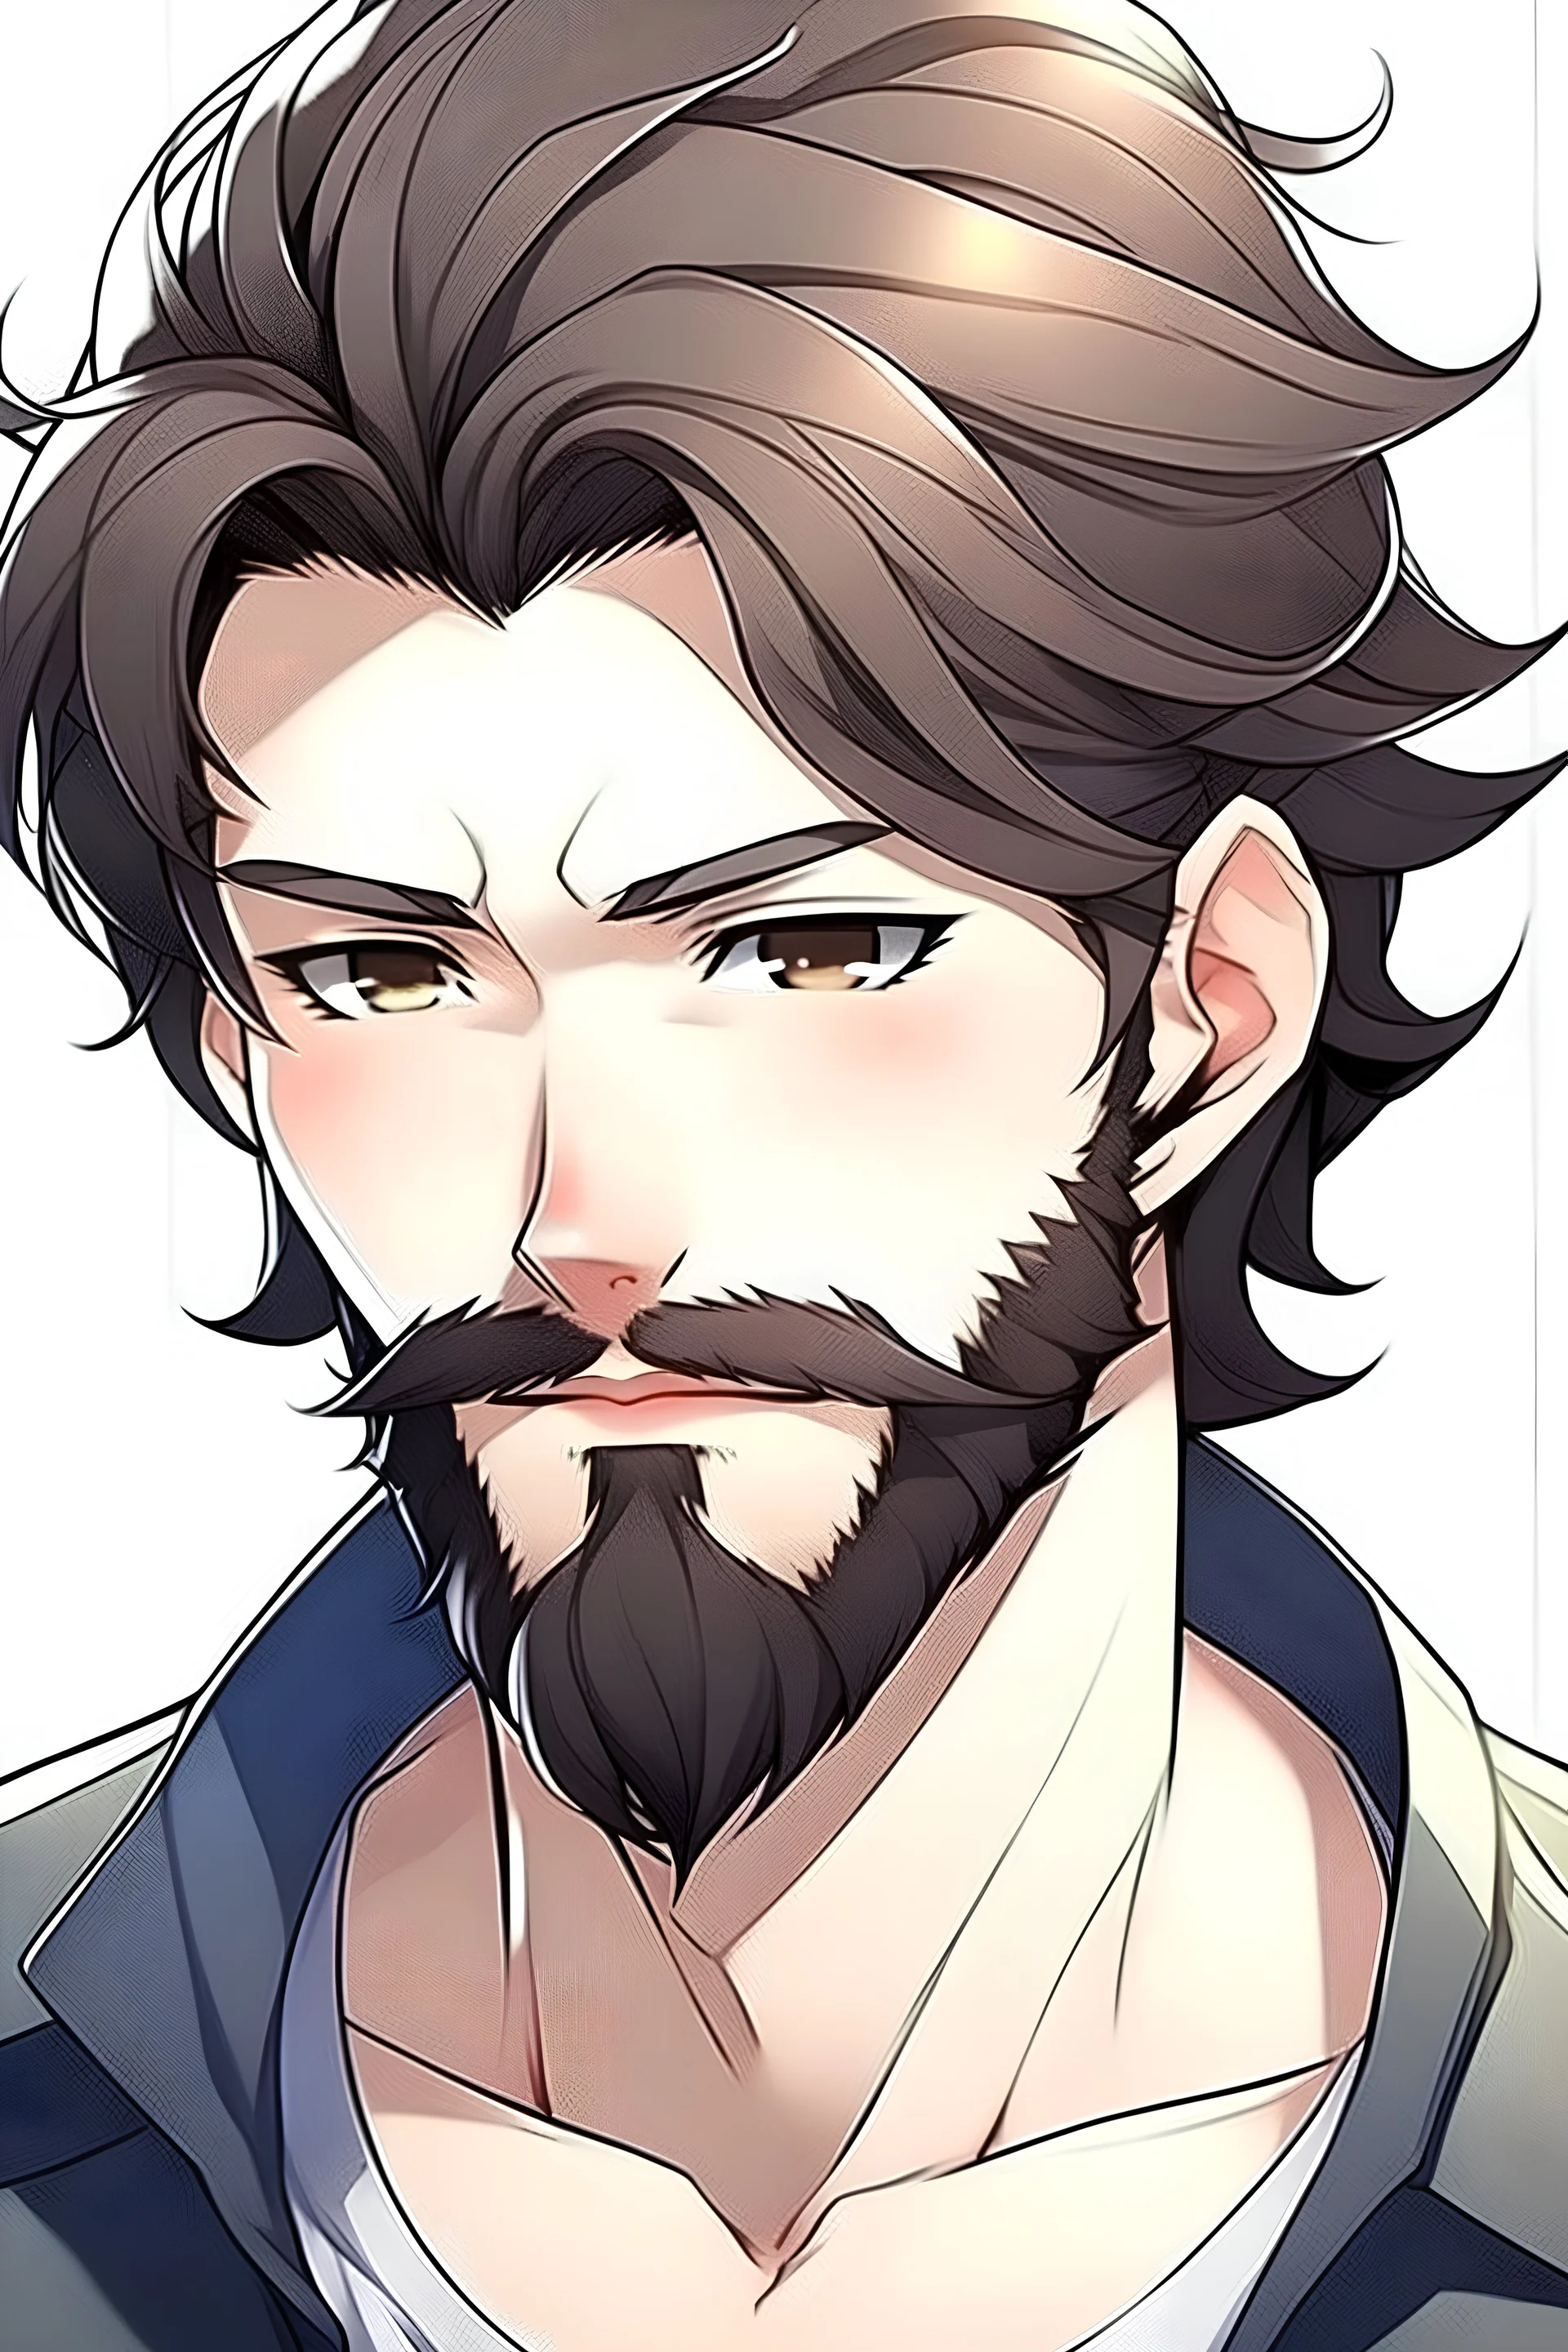 Anime-beard - Anime-beard added a new photo.